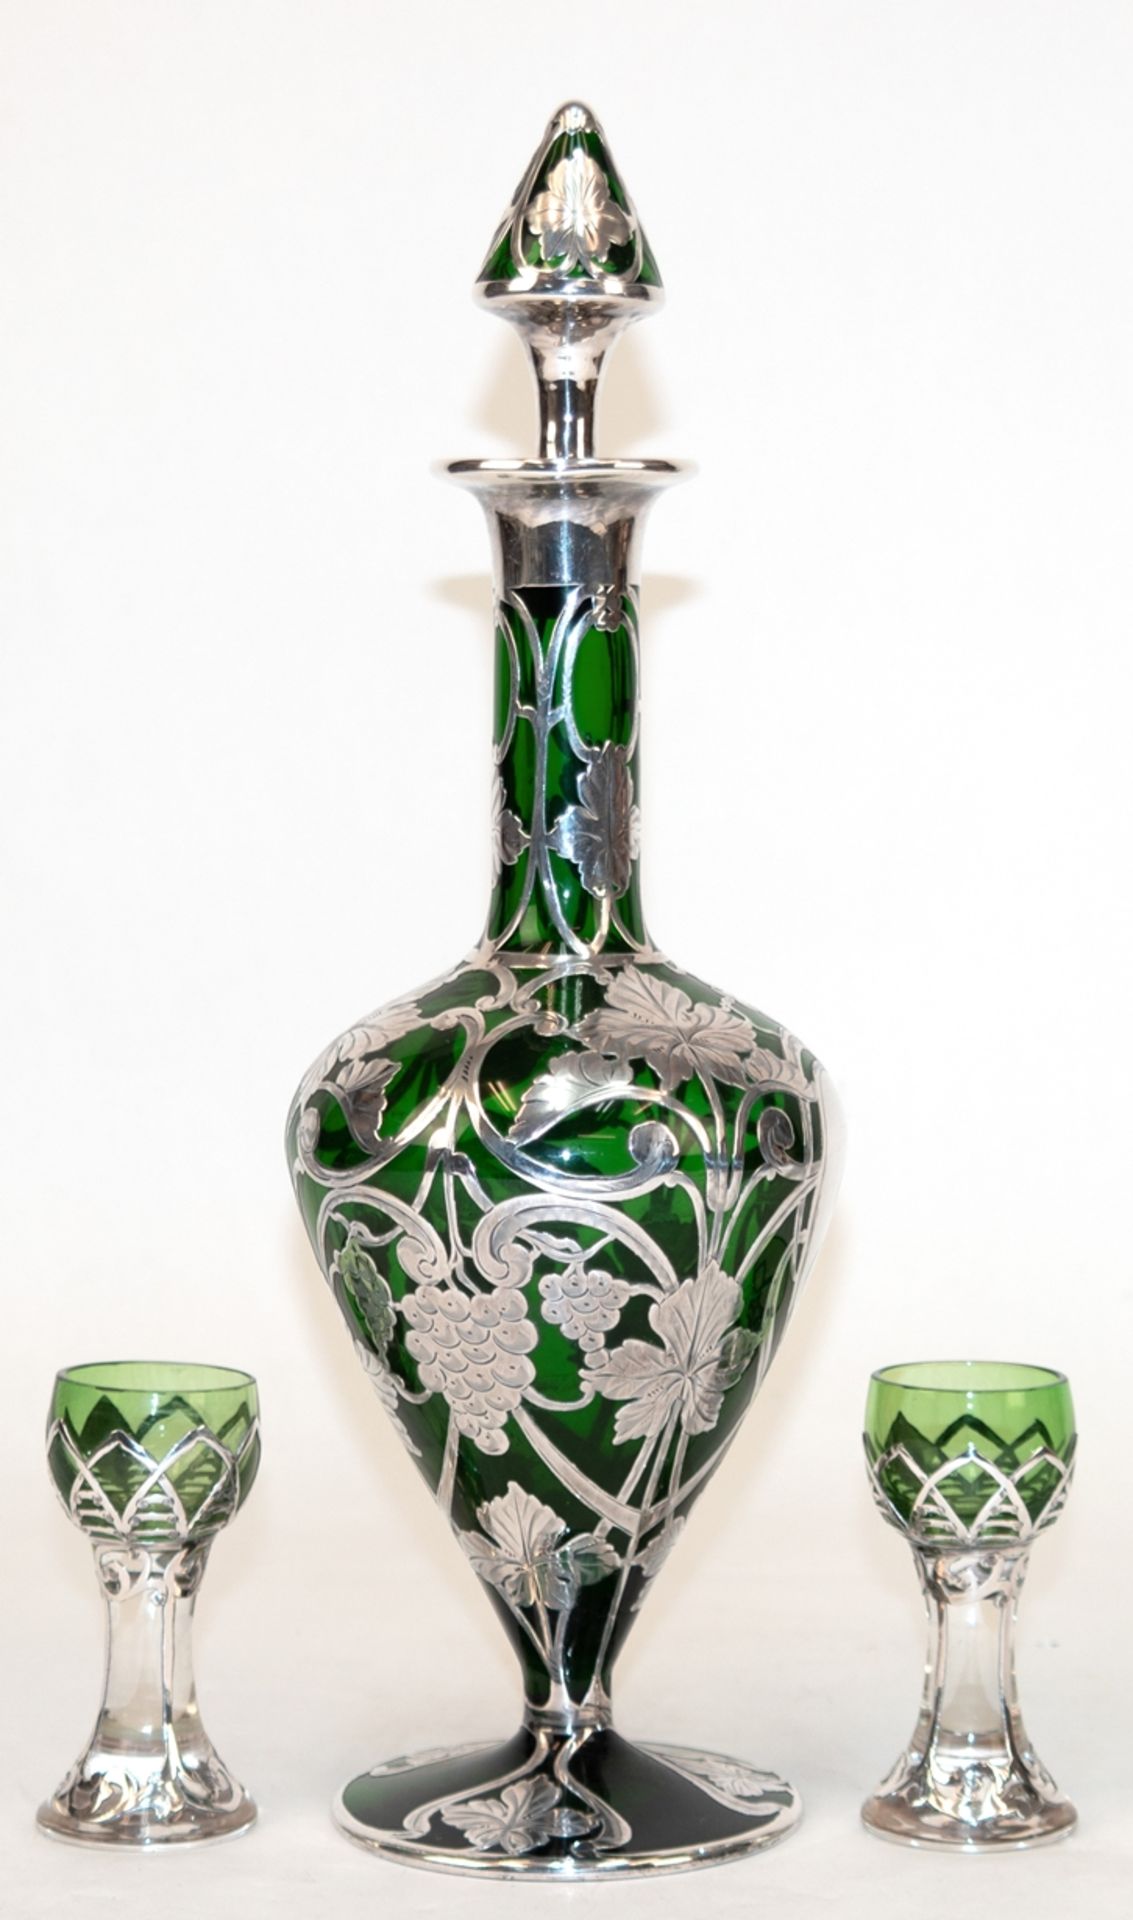 Jugendstil-Karaffe und 2 Gläser, grünes Glas mit durchbrochen gearbeiteter Silbermontur mit Weinlau